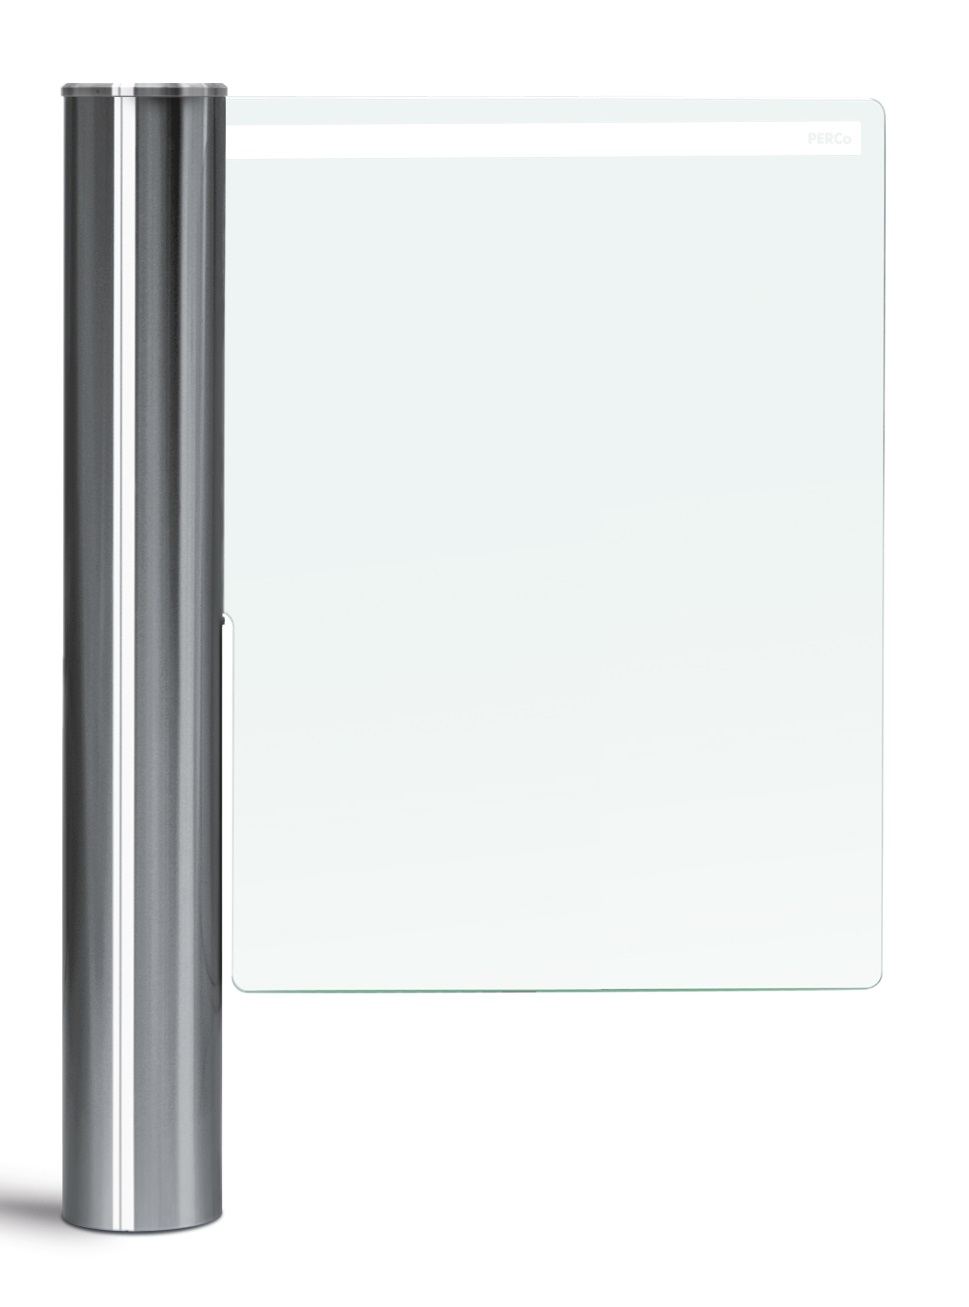 Створка длиной 650 мм для стойки калитки PERCo-WMD-06, закаленное стекло